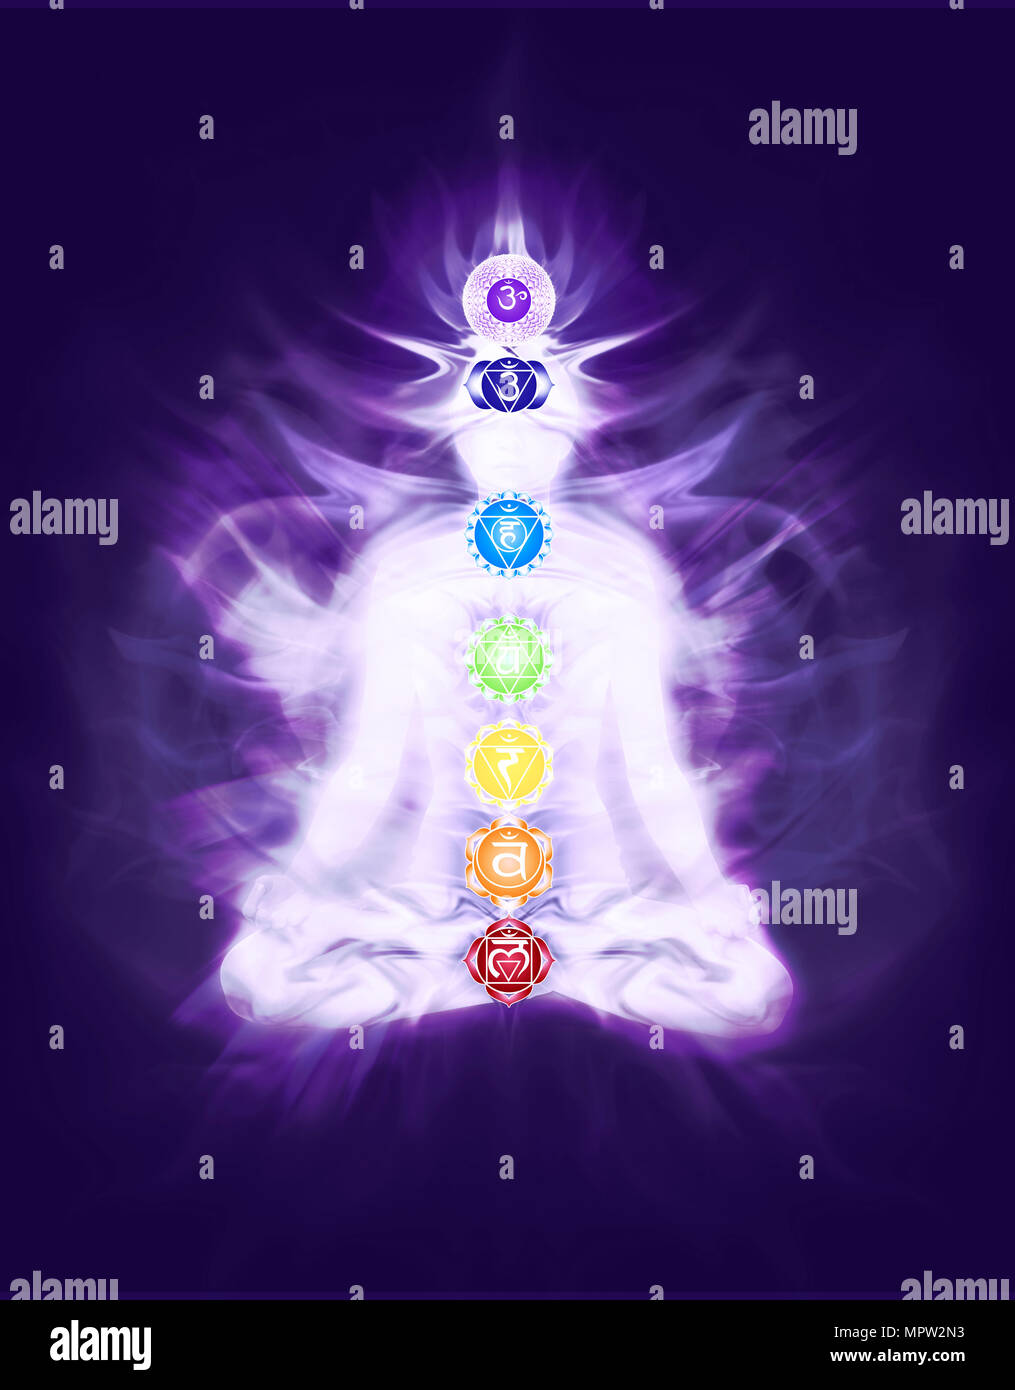 Persona seduta in meditazione Yoga lotus pongono con colorato chakra e che emana il flusso di energia sovrapposti su corpo, design artistico, illustr concettuale Foto Stock